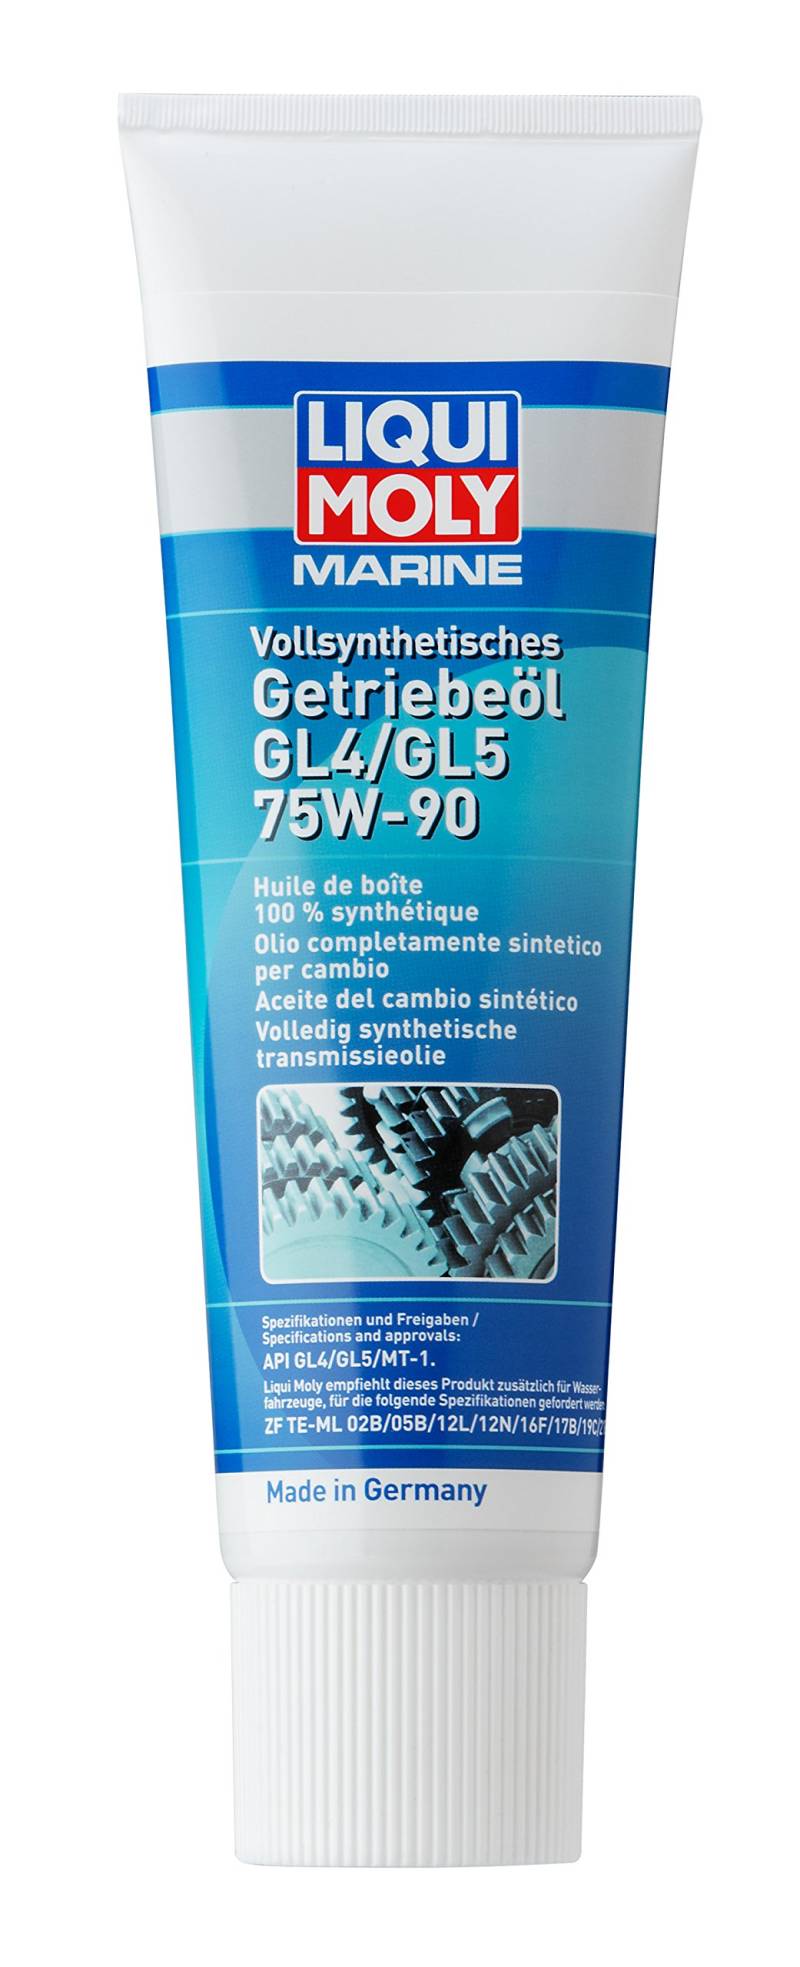 LIQUI MOLY Marine Vollsynthetisches Getriebeöl GL4/GL5 75W-90 | 250 ml | Boot Getriebeöl | Art.-Nr.: 25036 von Liqui Moly